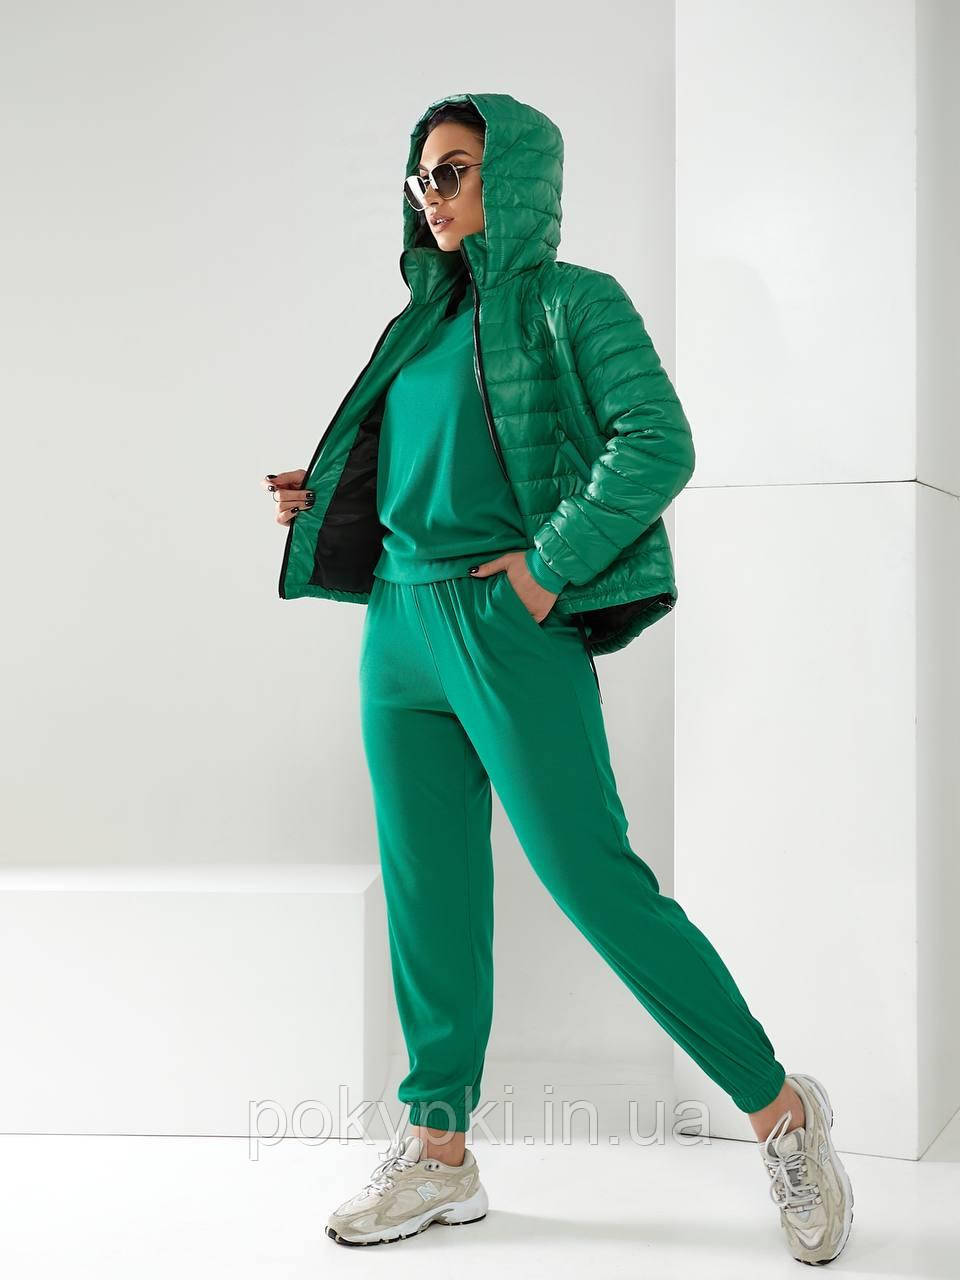 Зручний теплий жіночий костюм-трійка для спорту та прогулянок куртка, кофта та штани зелений